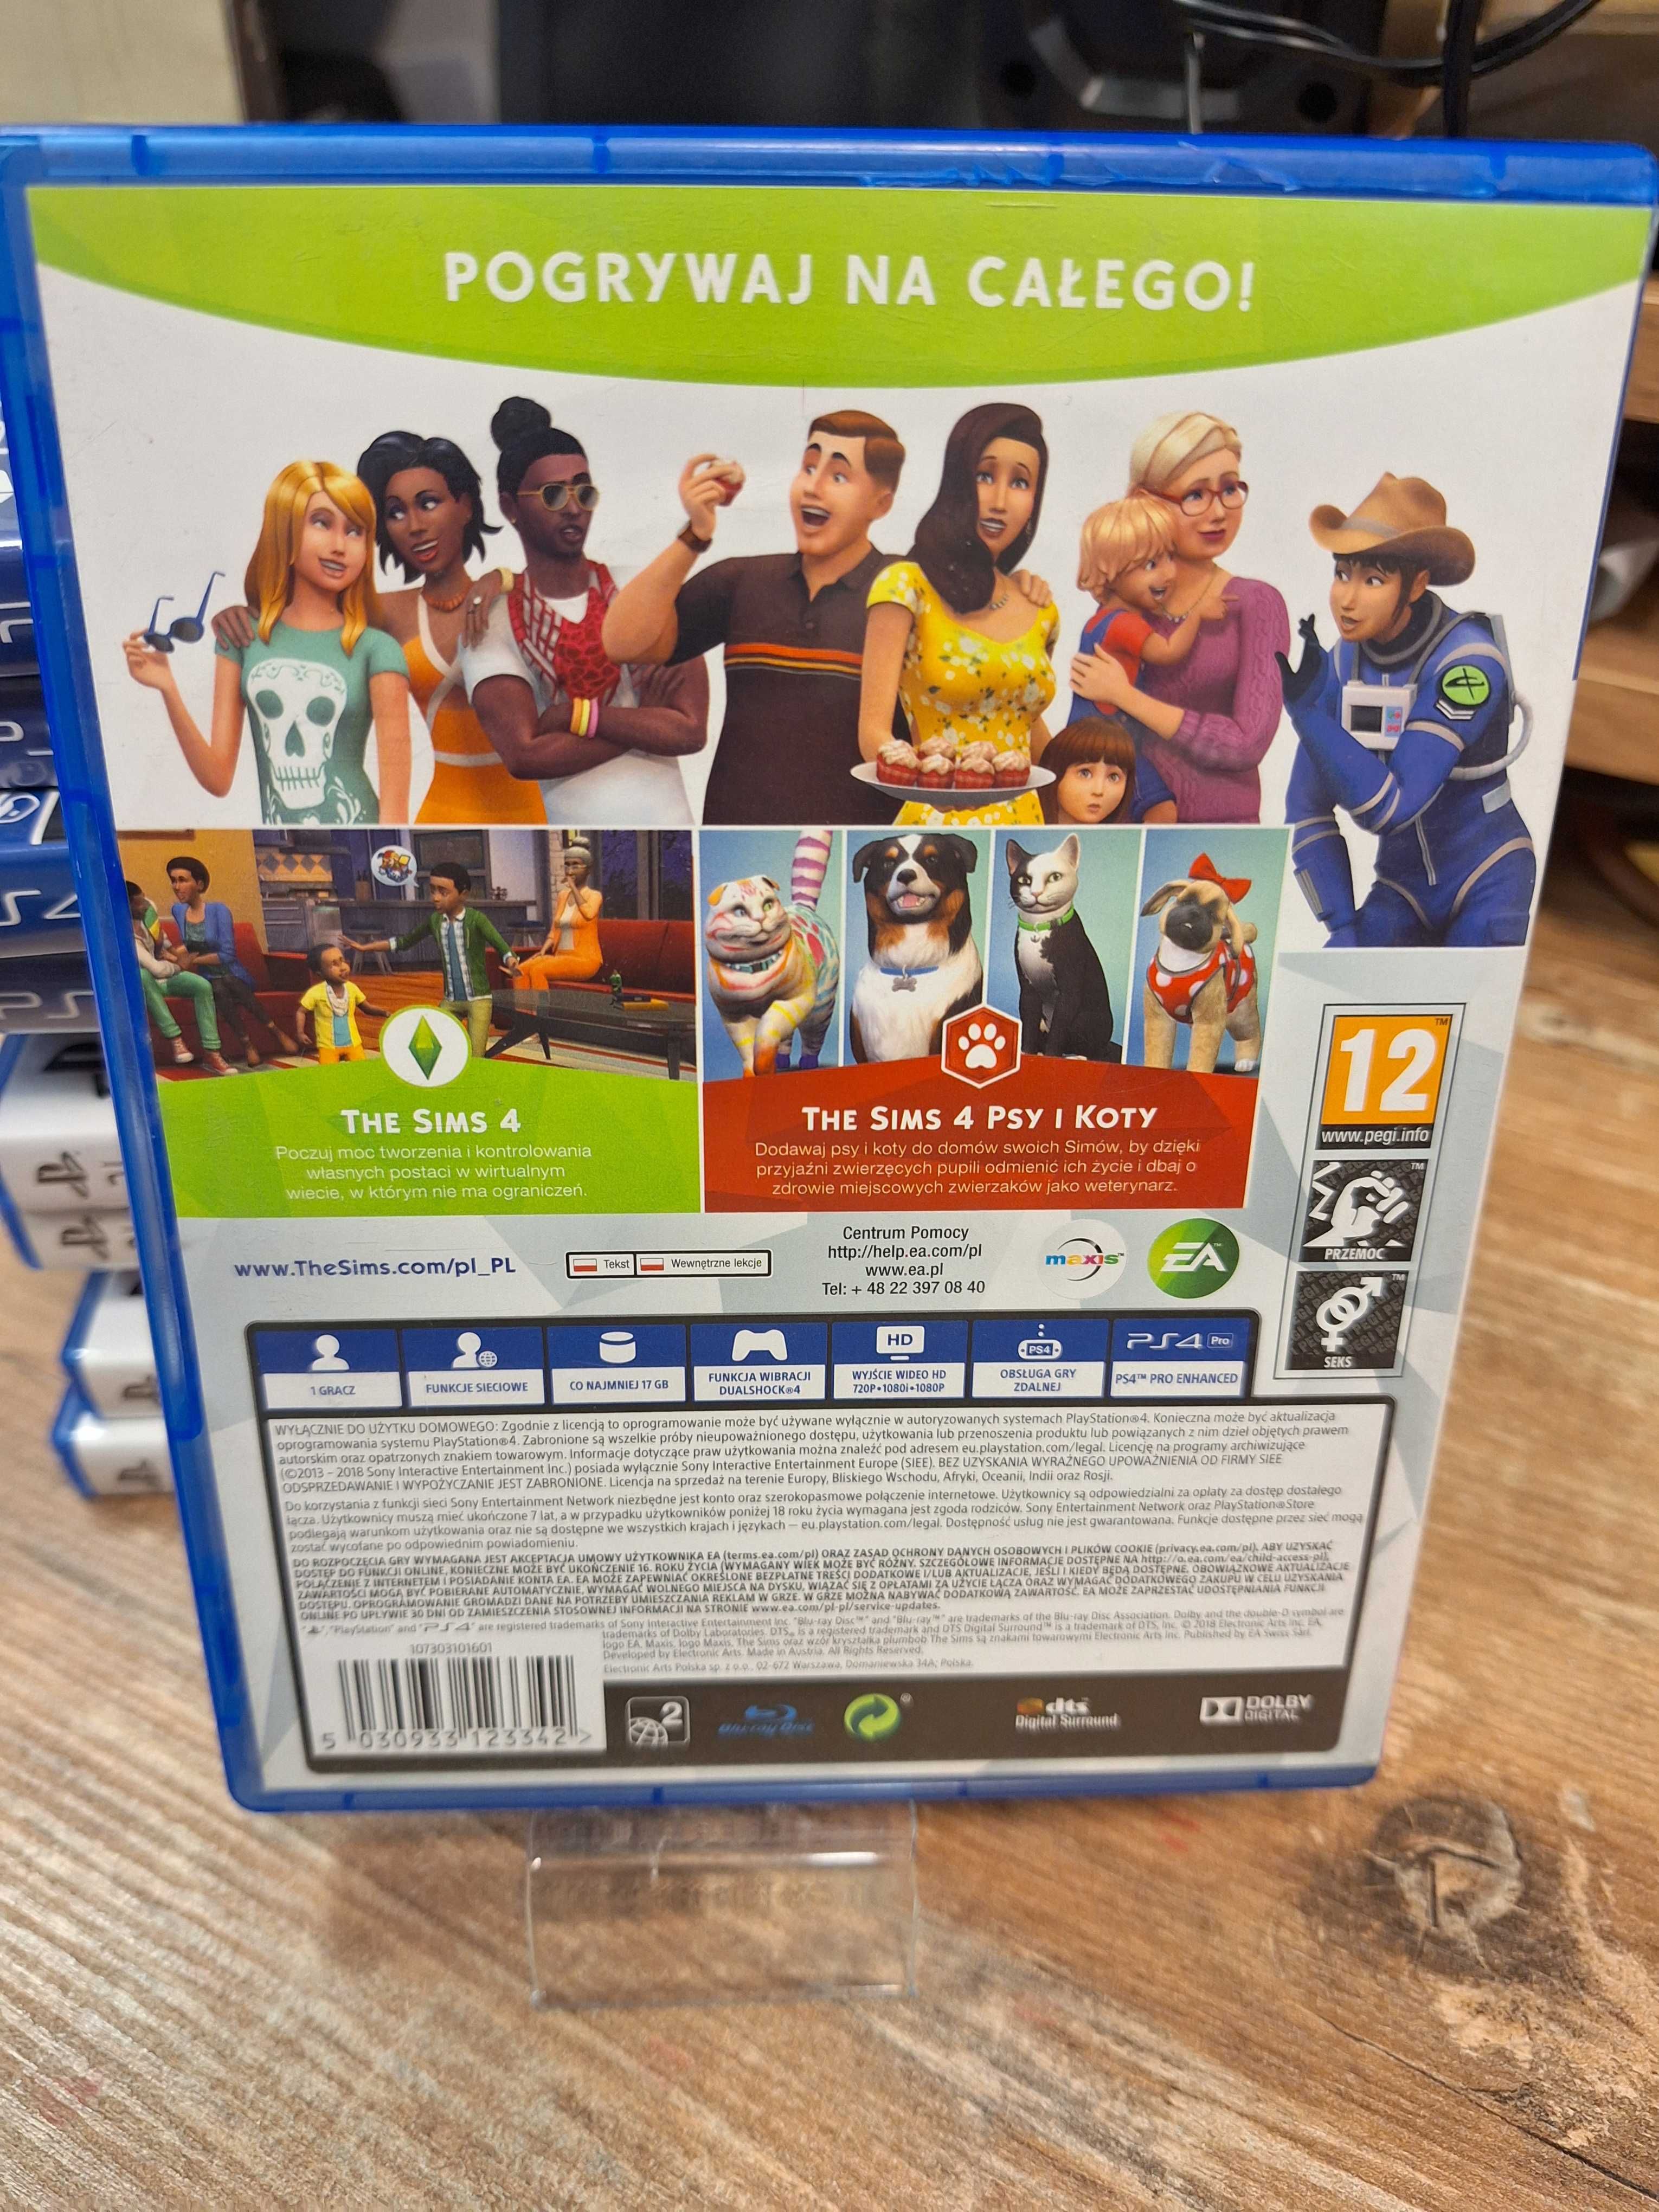 The Sims 4: Psy i koty PS4 Sklep Wysyłka Wymiana